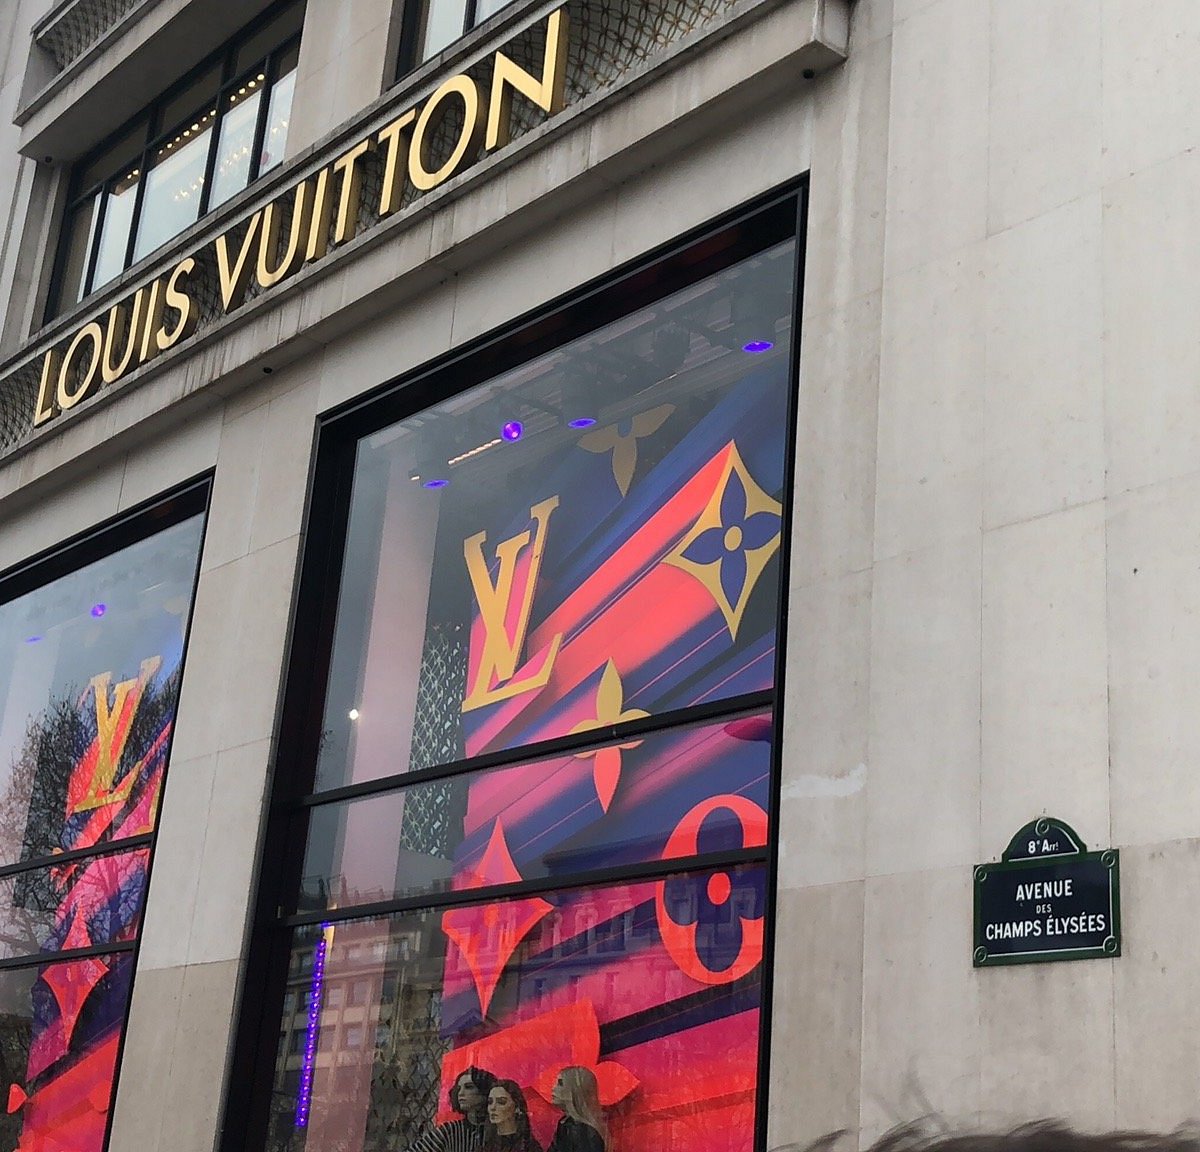 Las mejores ofertas en Carteras Louis Vuitton Original